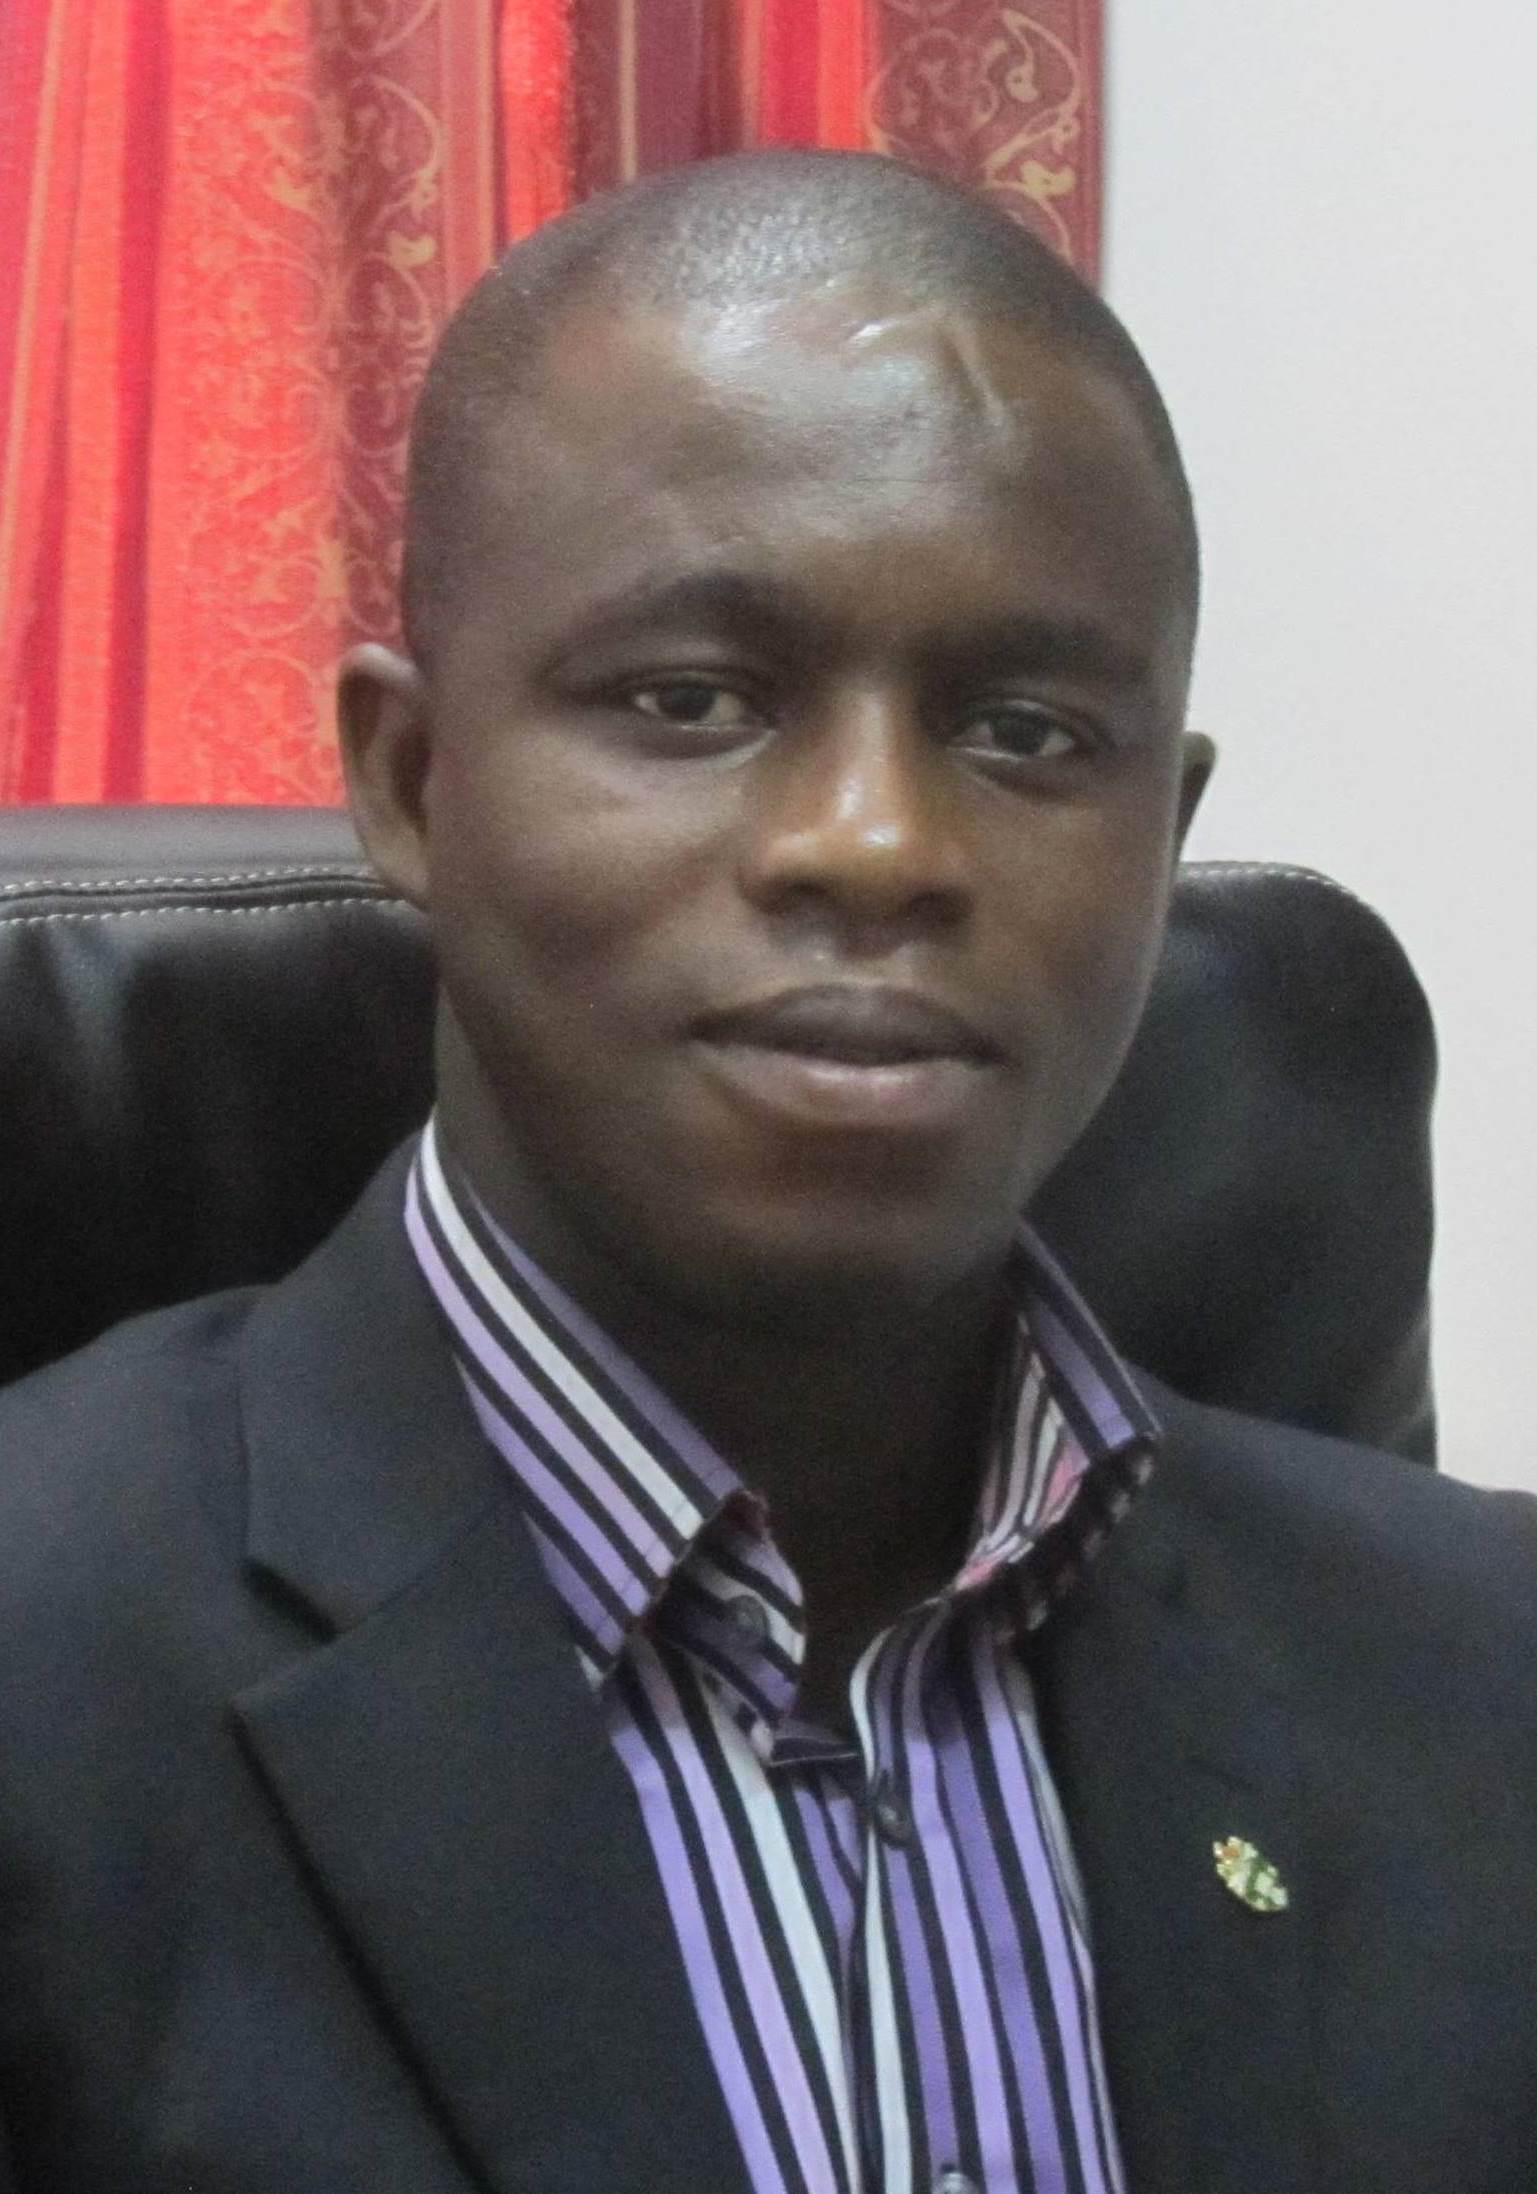 Philip Antwi-Agyei